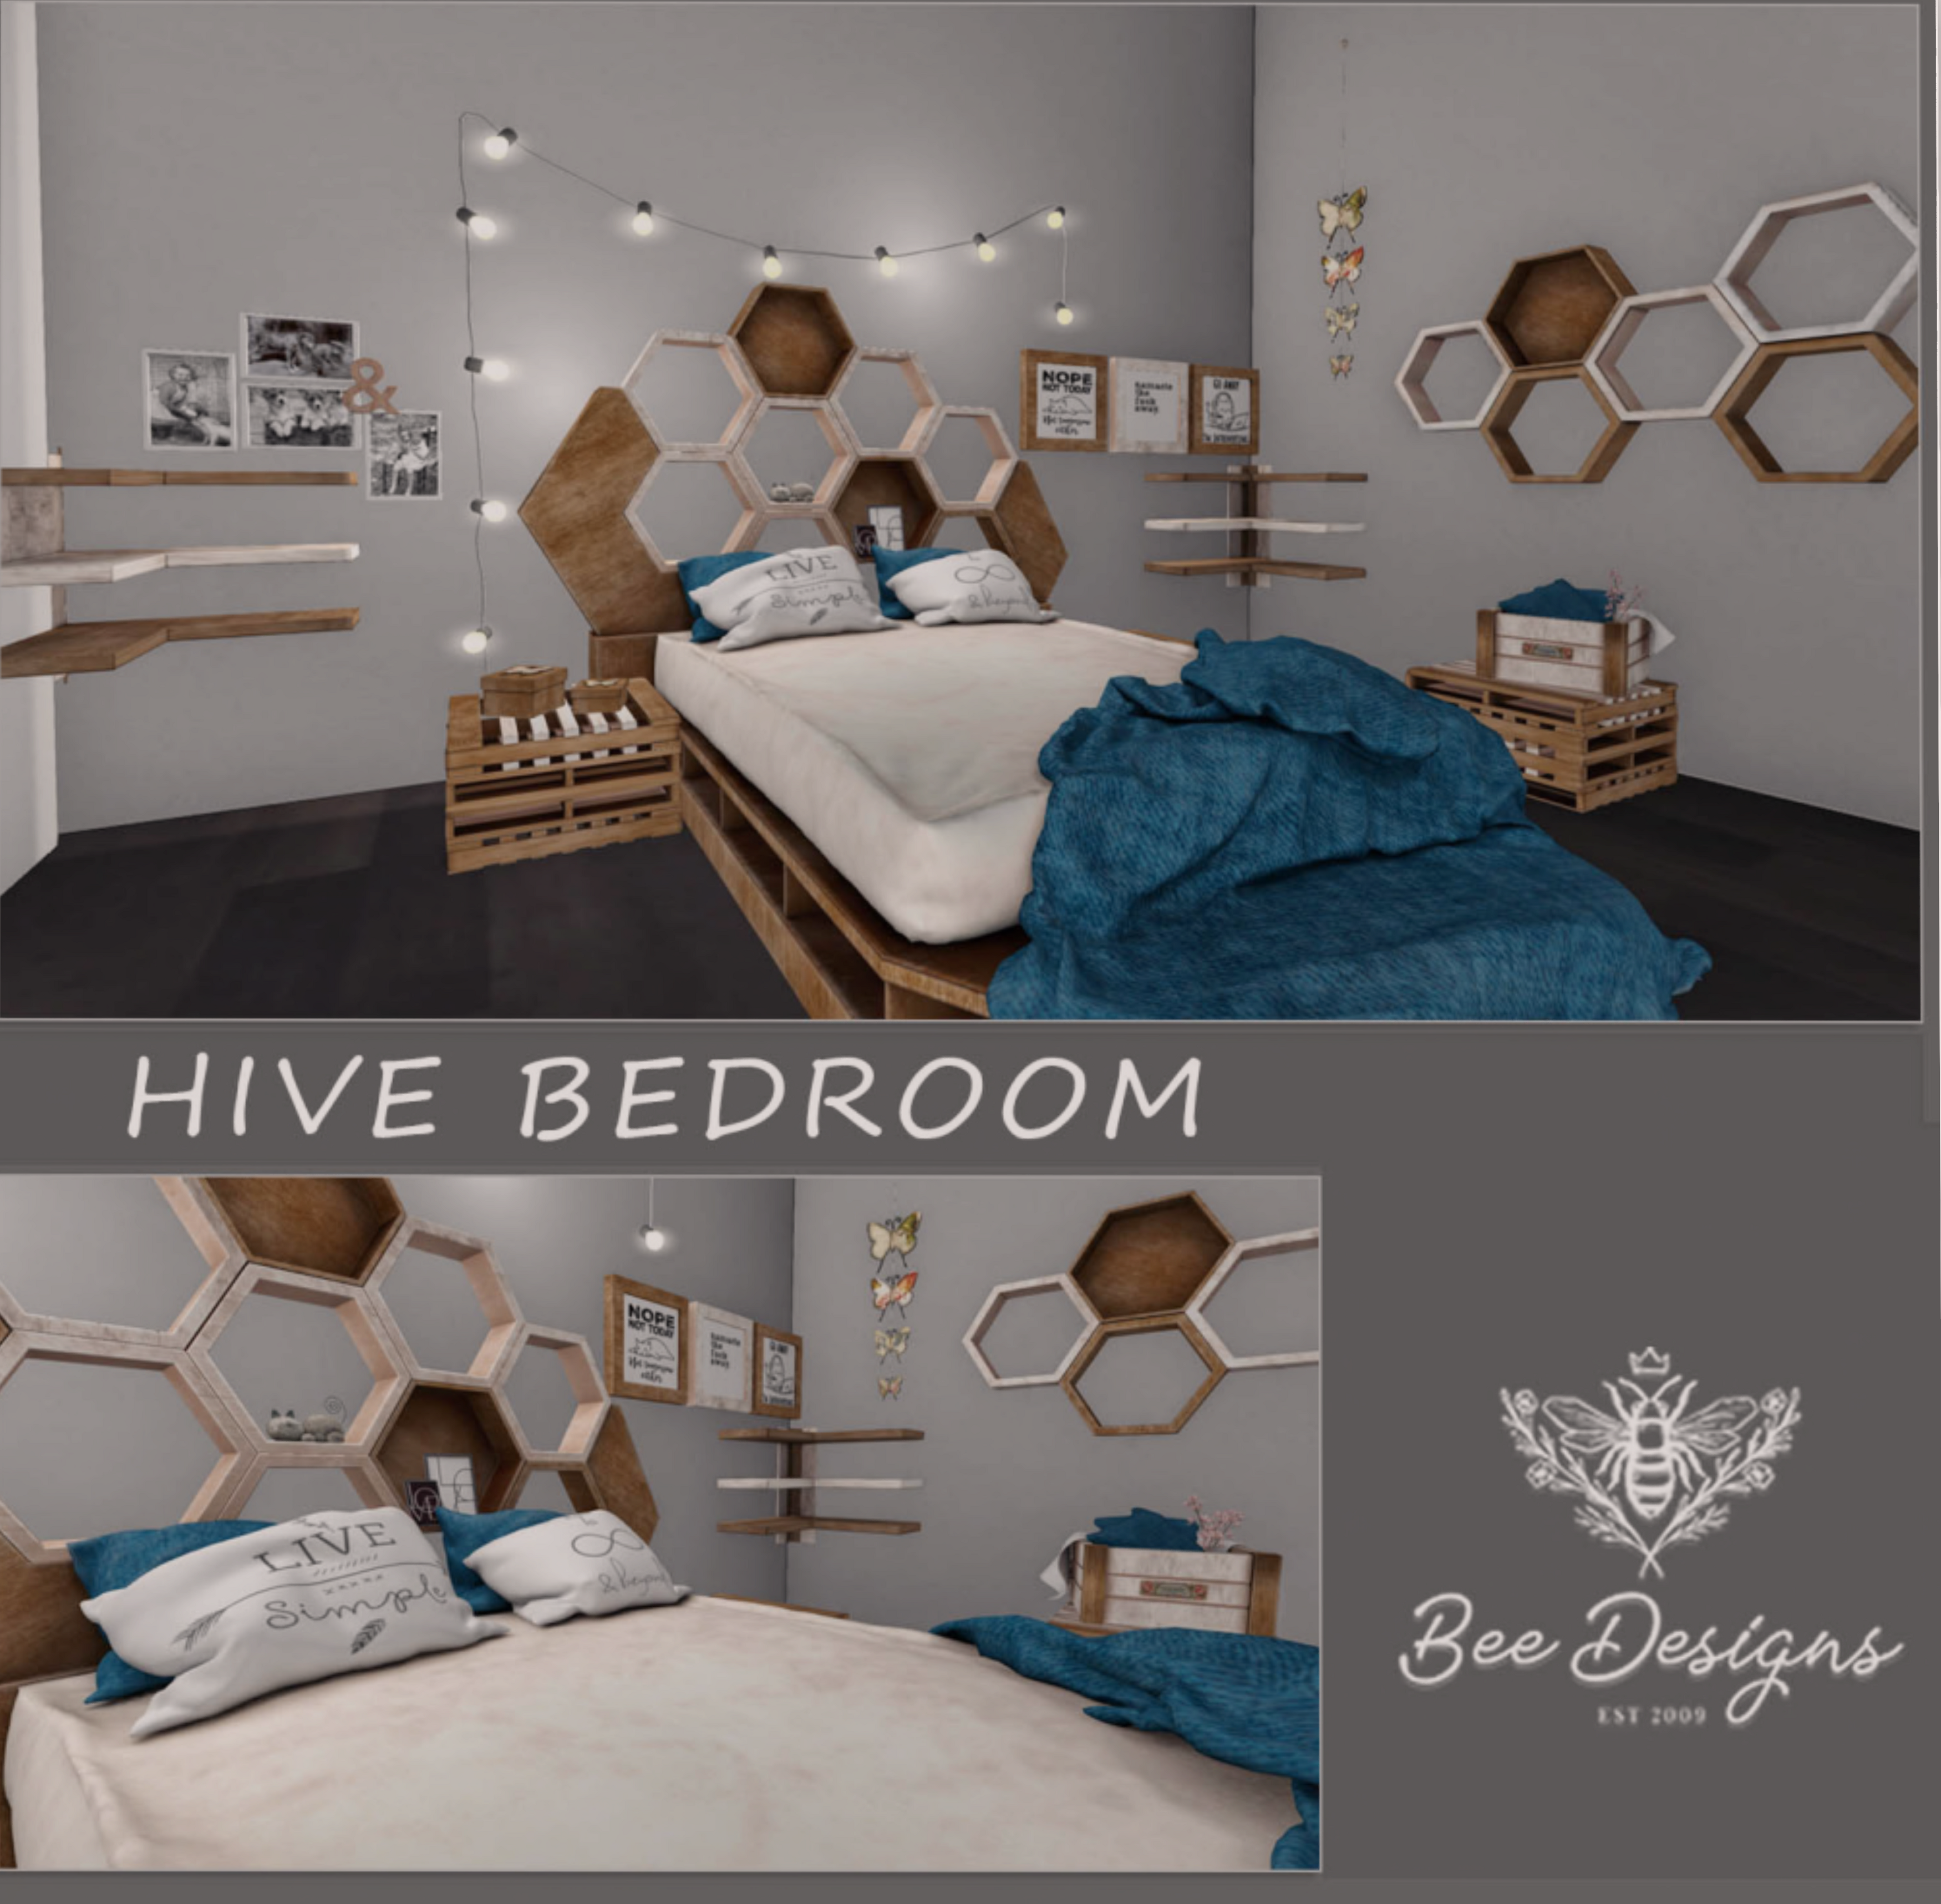 Bee Designs – Hive Bedroom